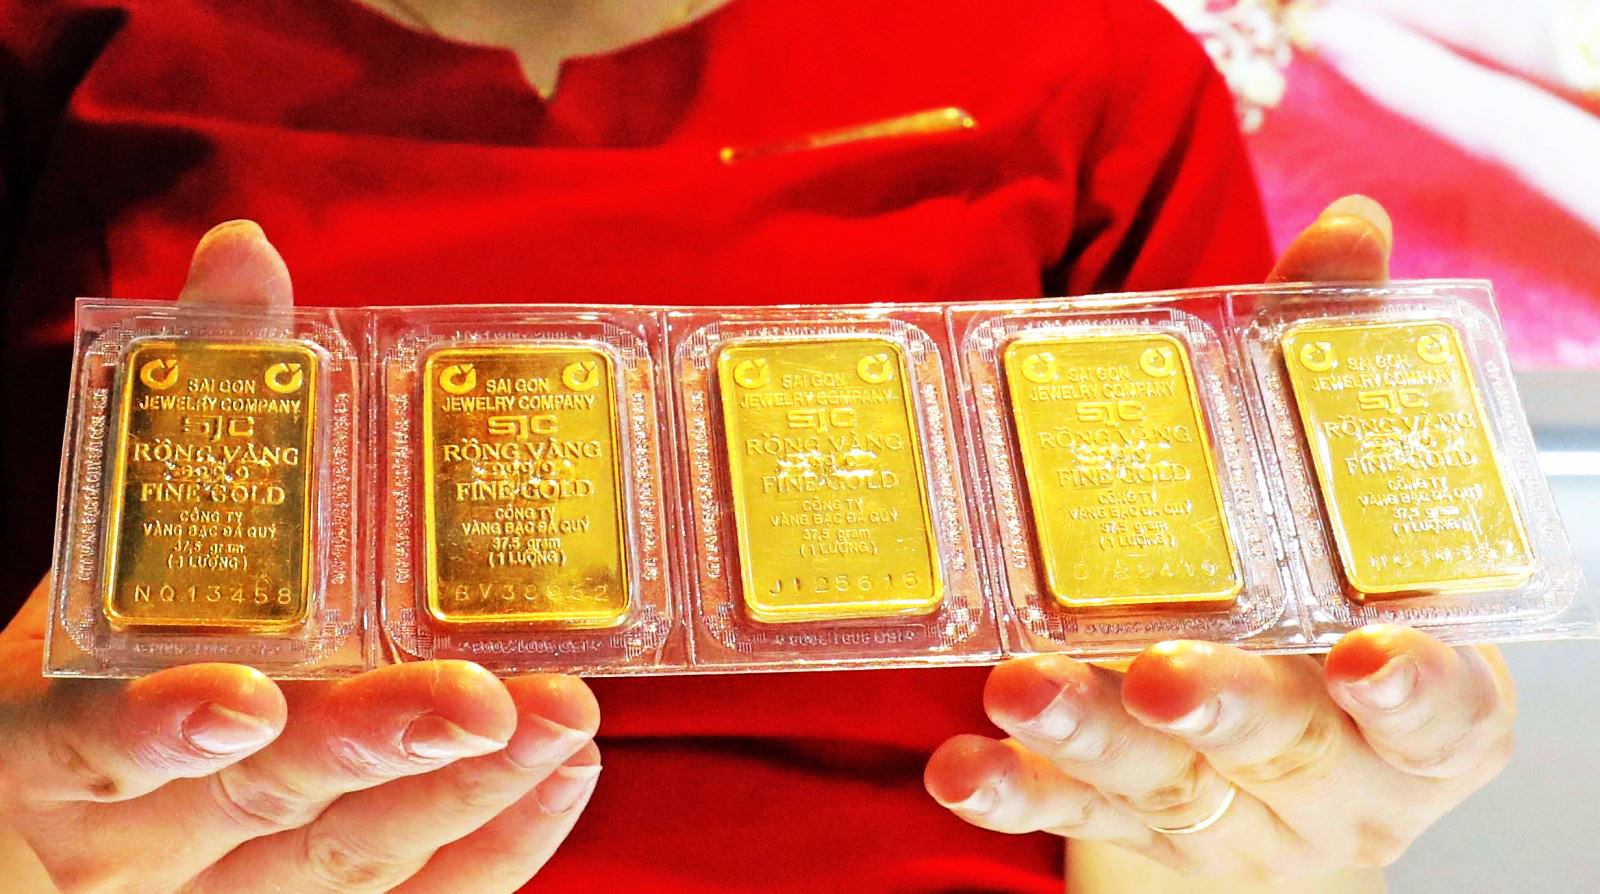 Sản phẩm vàng miếng bày bán tại Công ty vàng Bảo Tín Minh Châu, phố Hoàng Cầu, Hà Nội. (Ảnh minh họa)